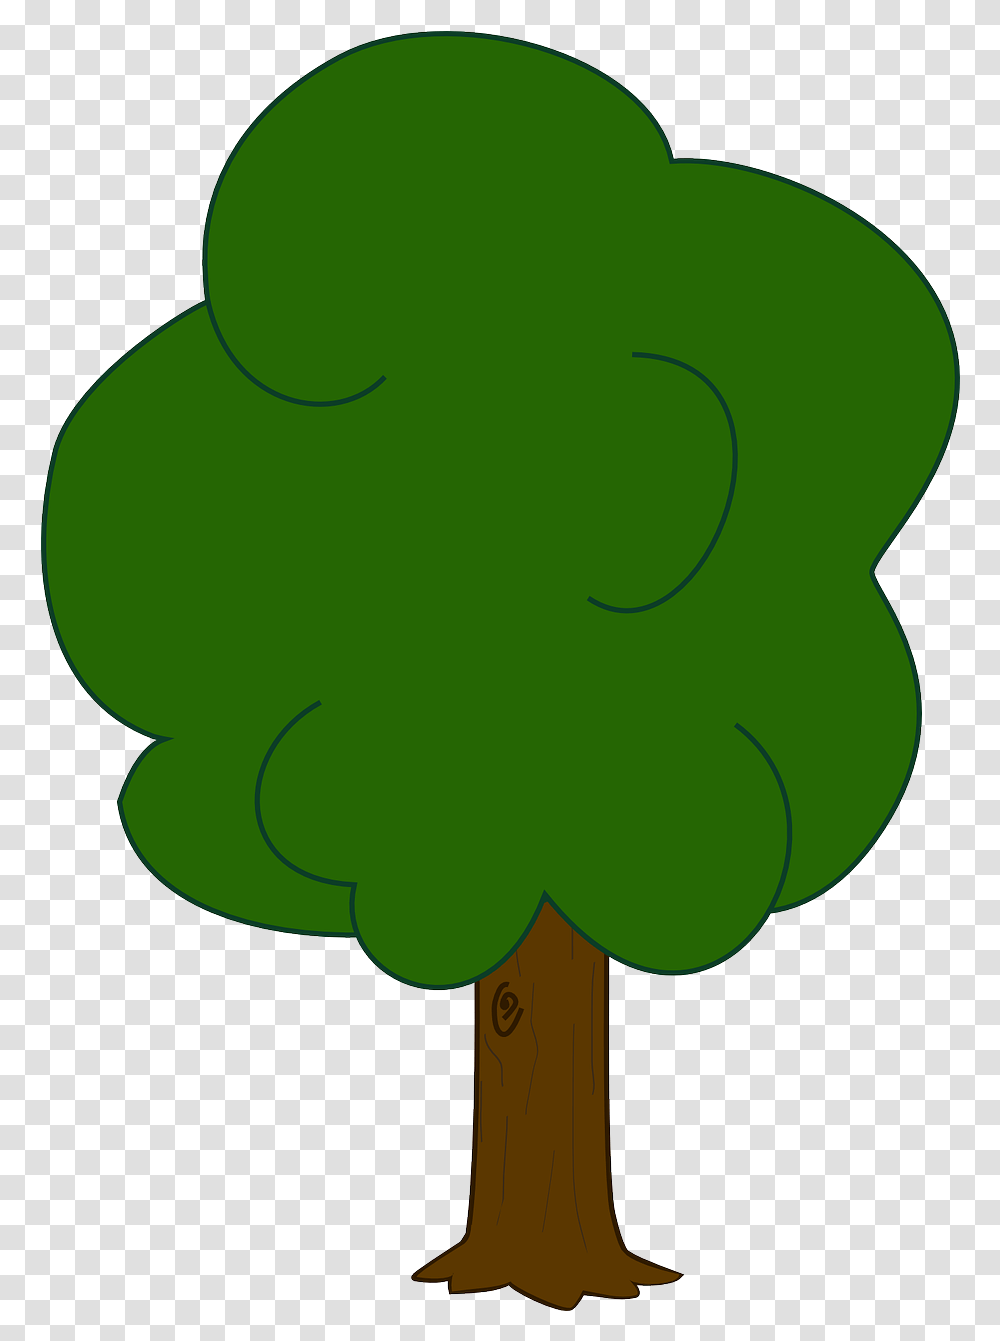 Vector Oak Tree Clip Art Download Full Size Broccoli Js, Plant, Green, Leaf, Symbol Transparent Png